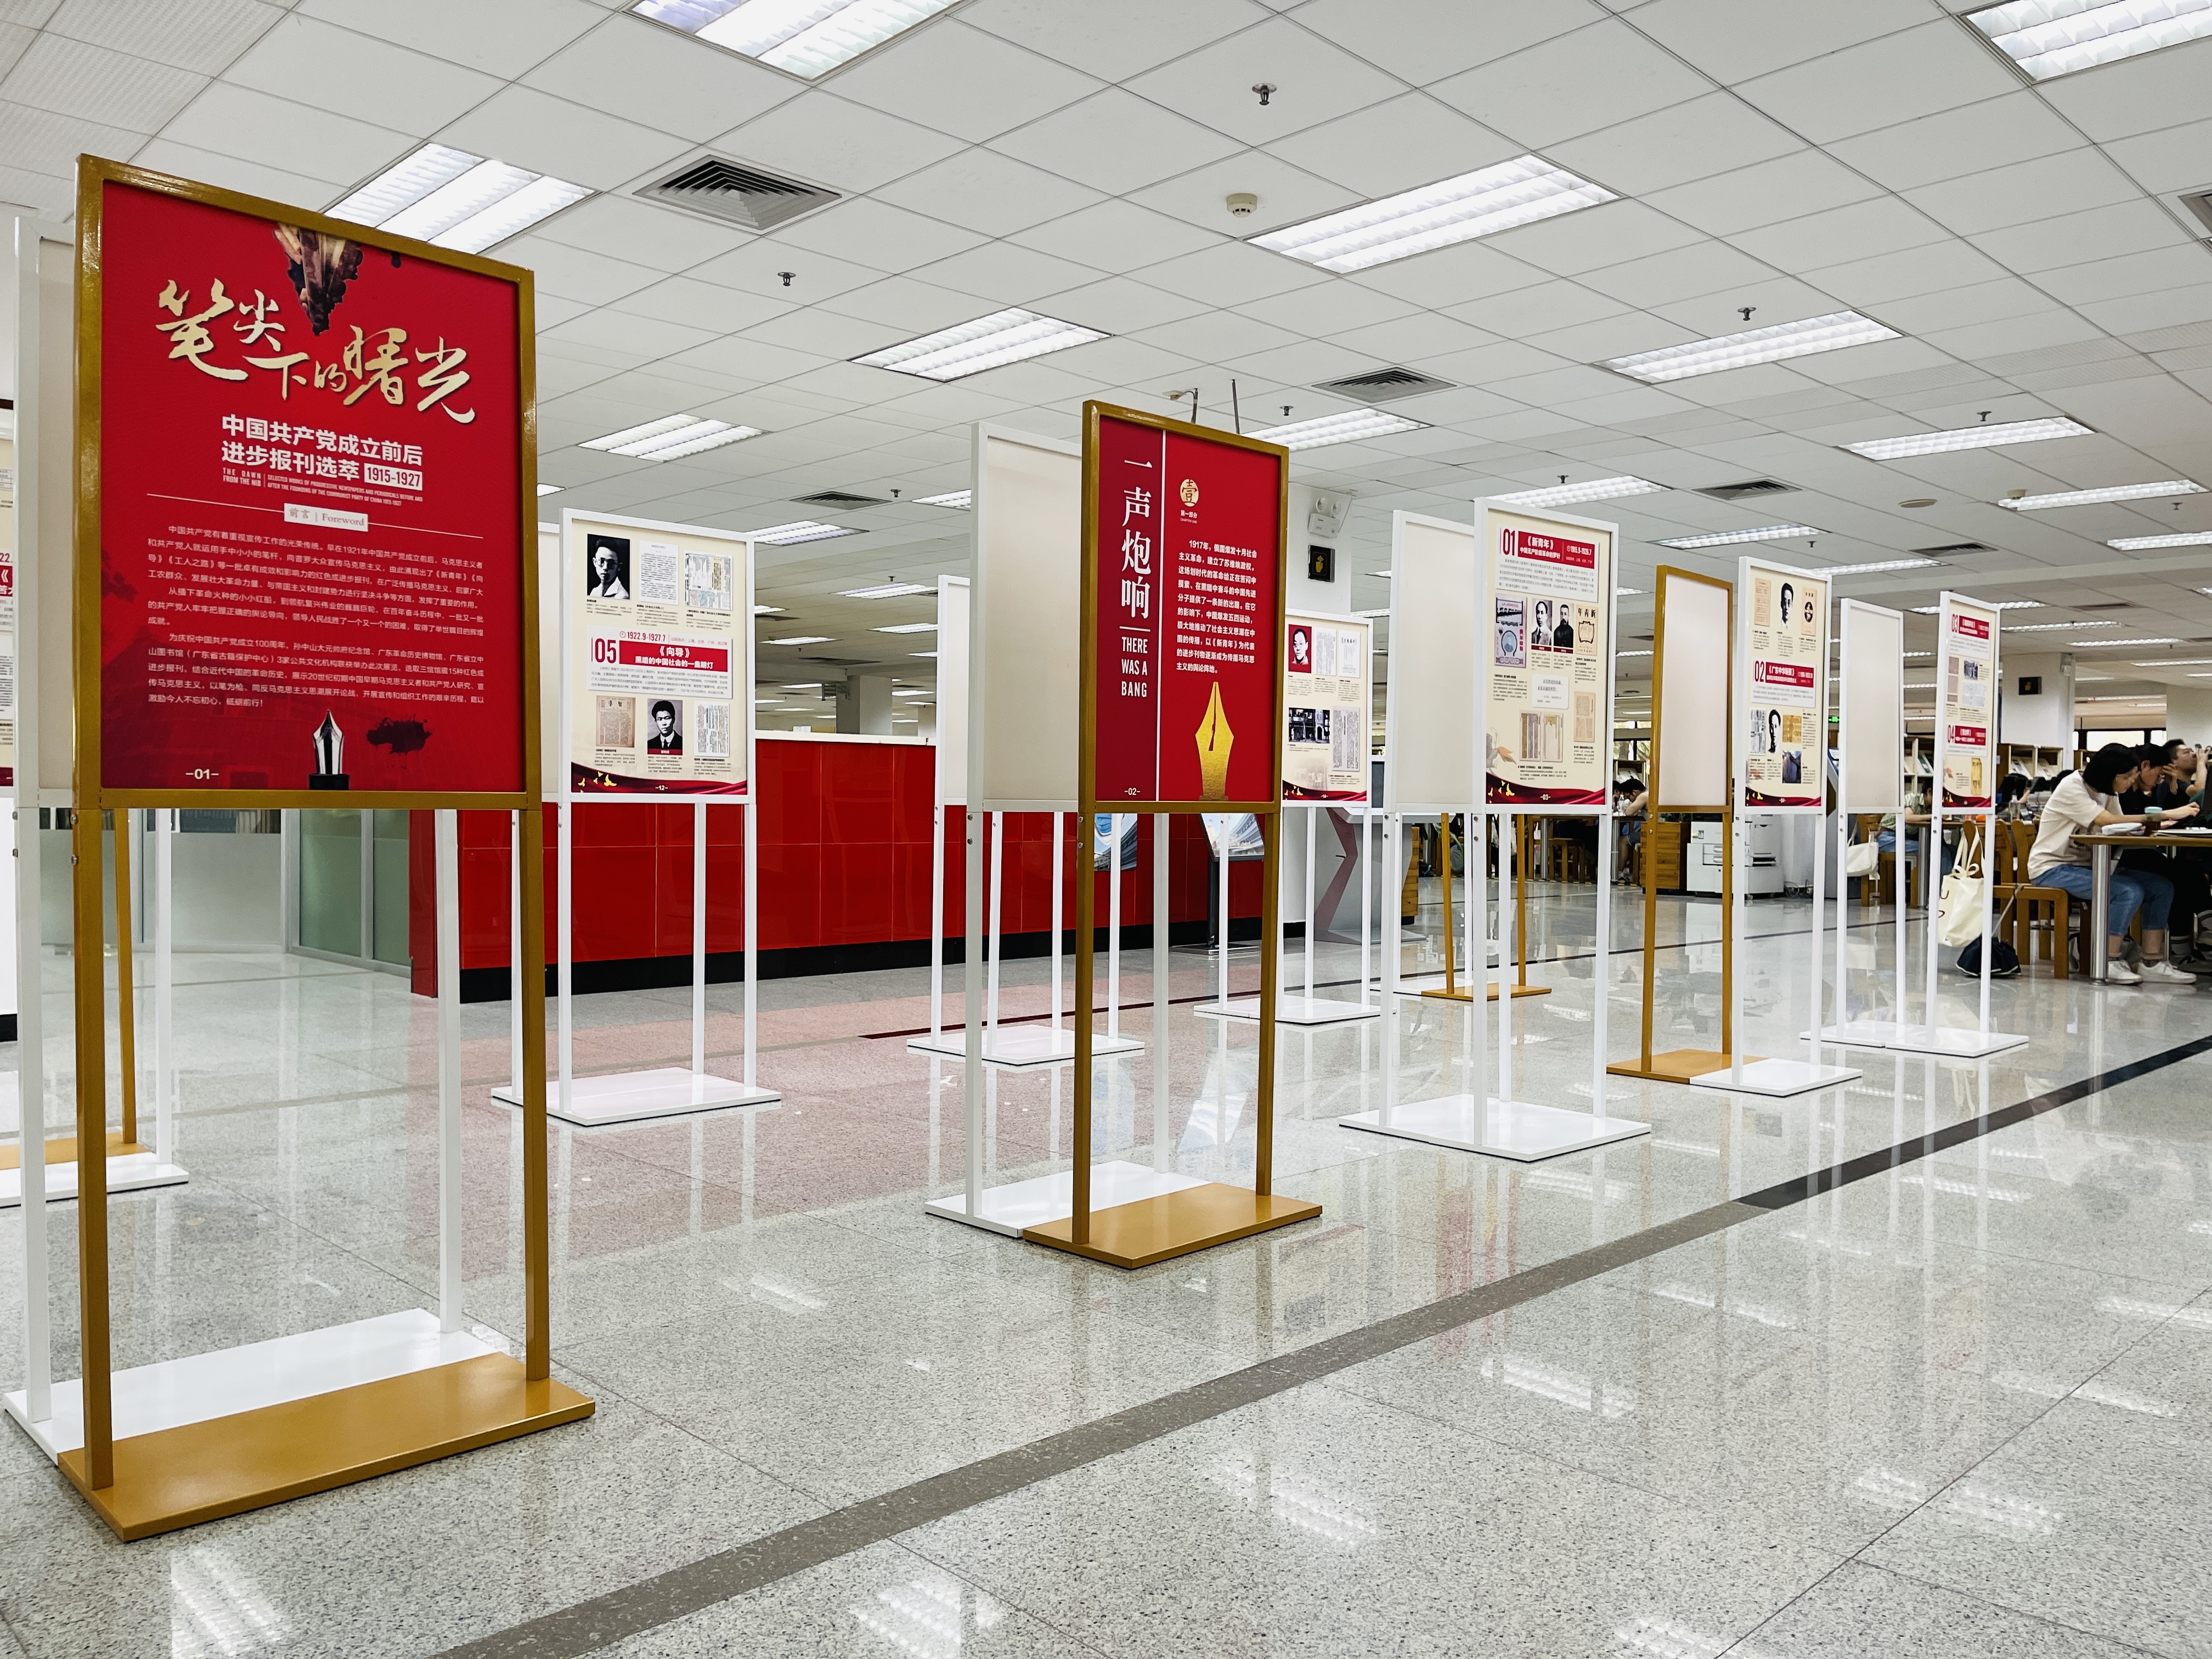 “笔尖下的曙光——中国共产党成立前后进步报刊选萃” 专题展览在图书馆展出